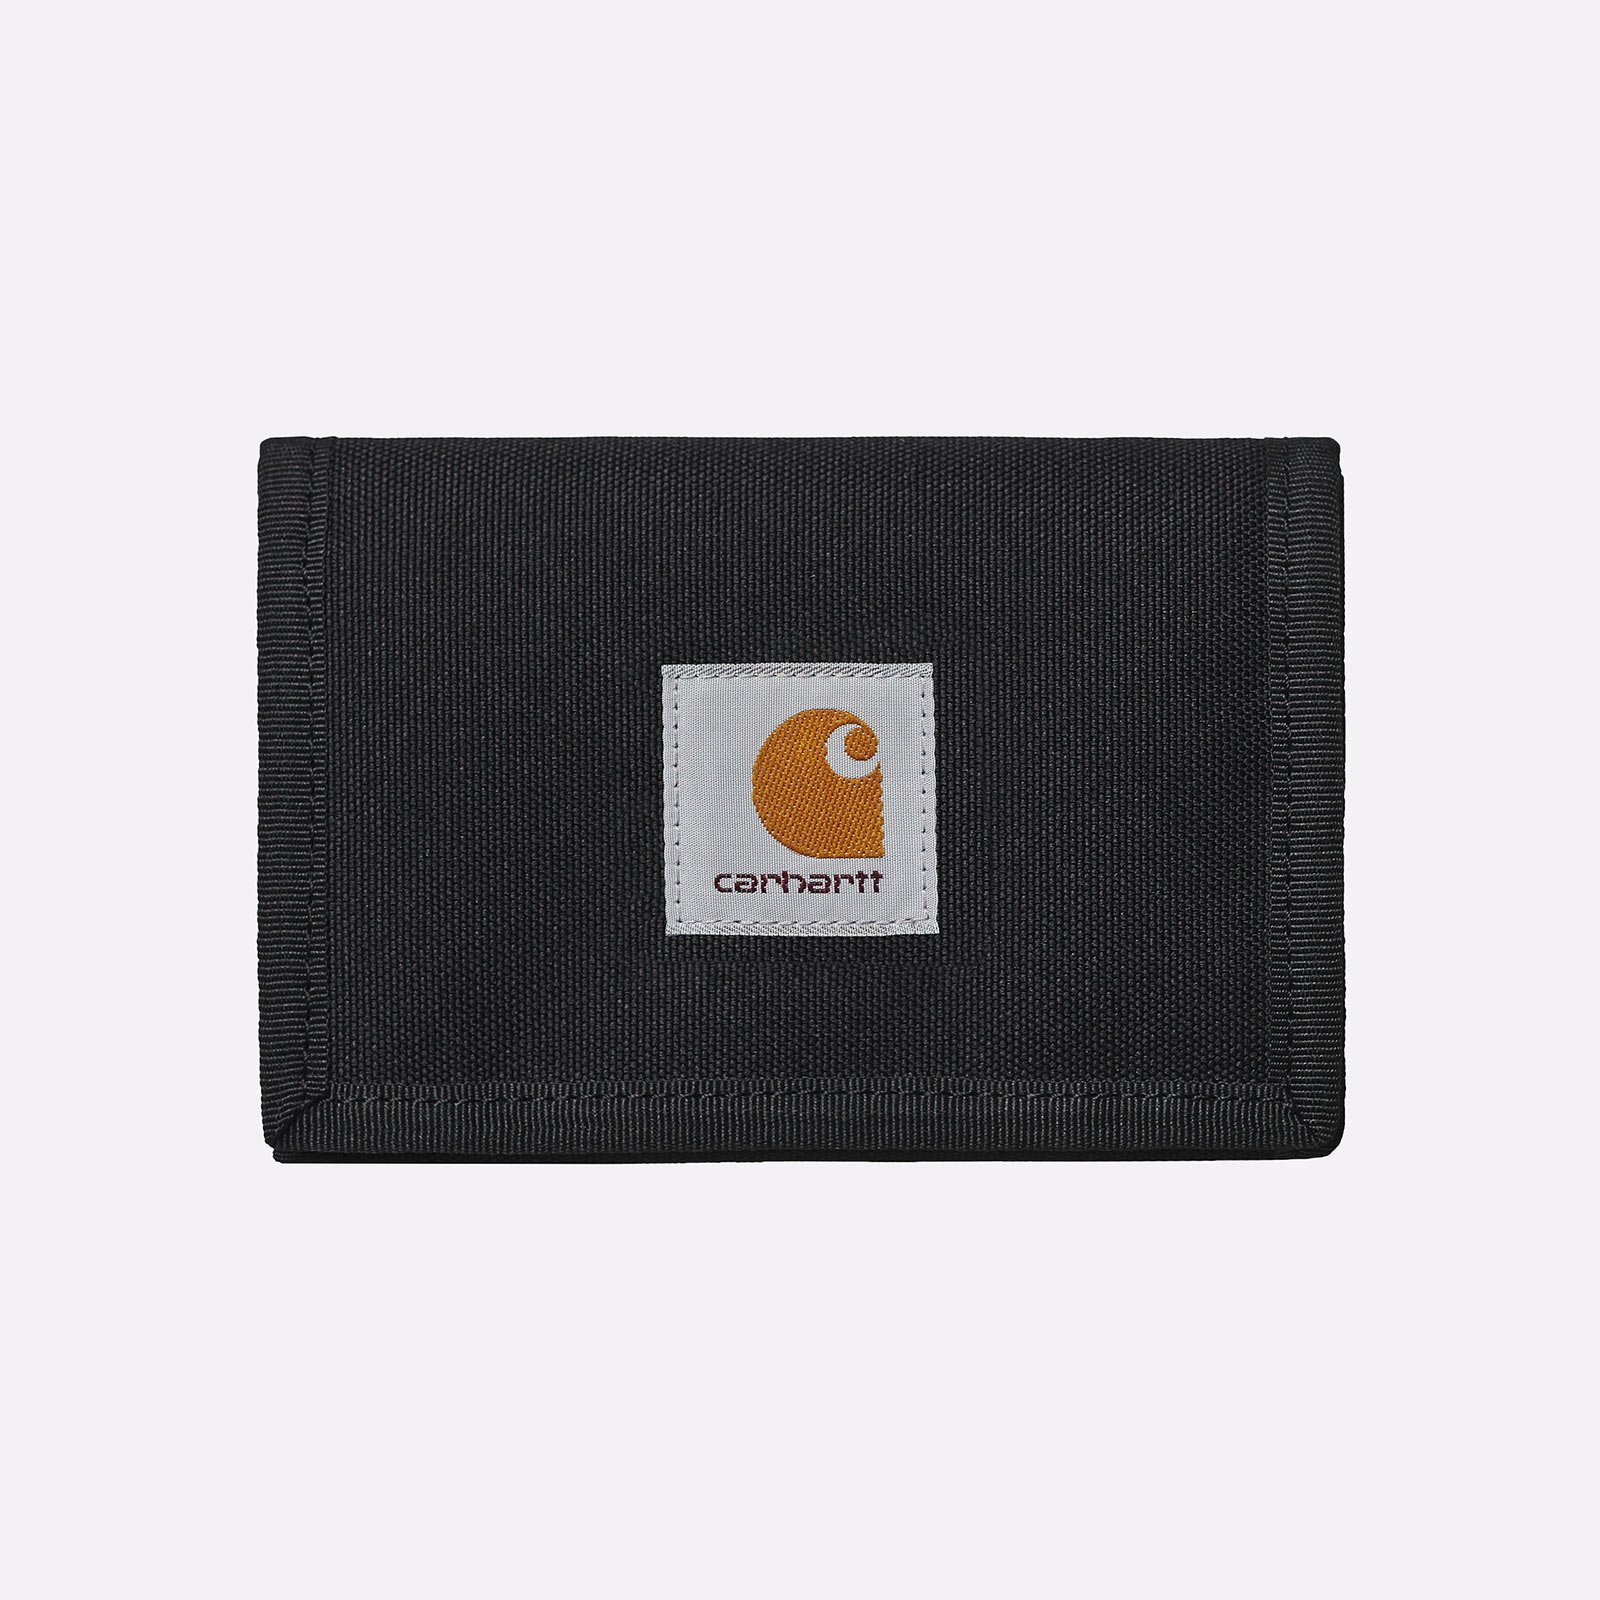 бумажник Carhartt WIP Alec Wallet  (I031471-black)  - цена, описание, фото 1